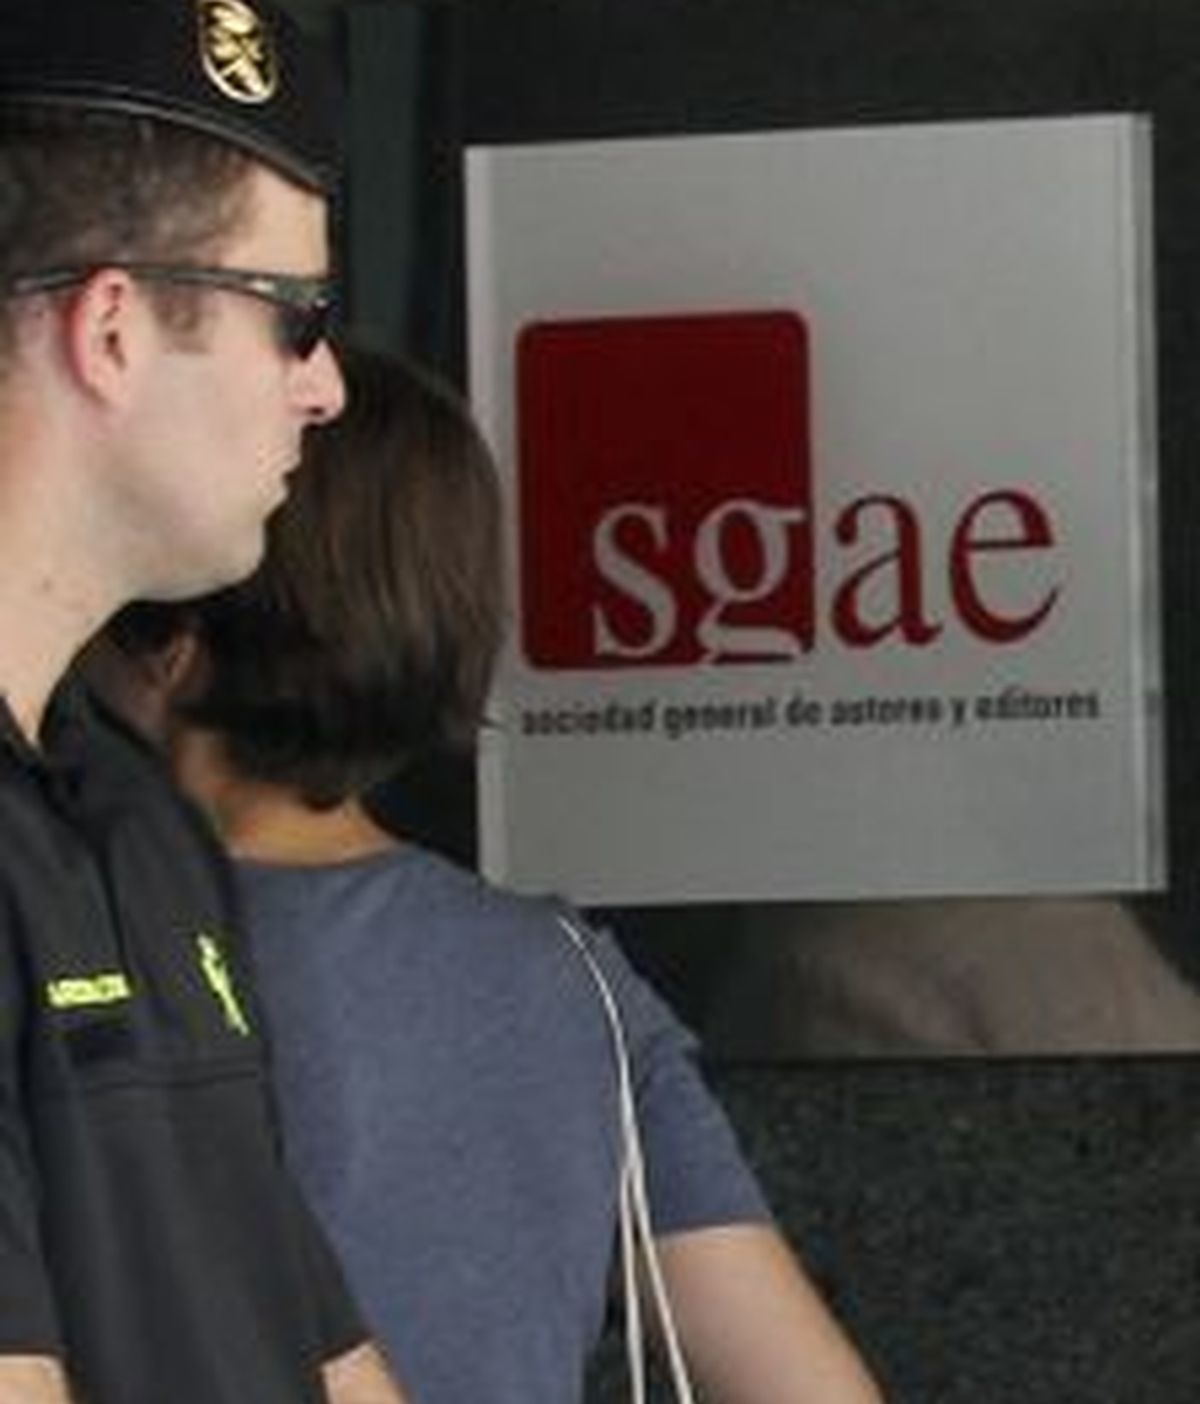 La SGAE anuncia que tomará medidas legales. Foto: Reuters.